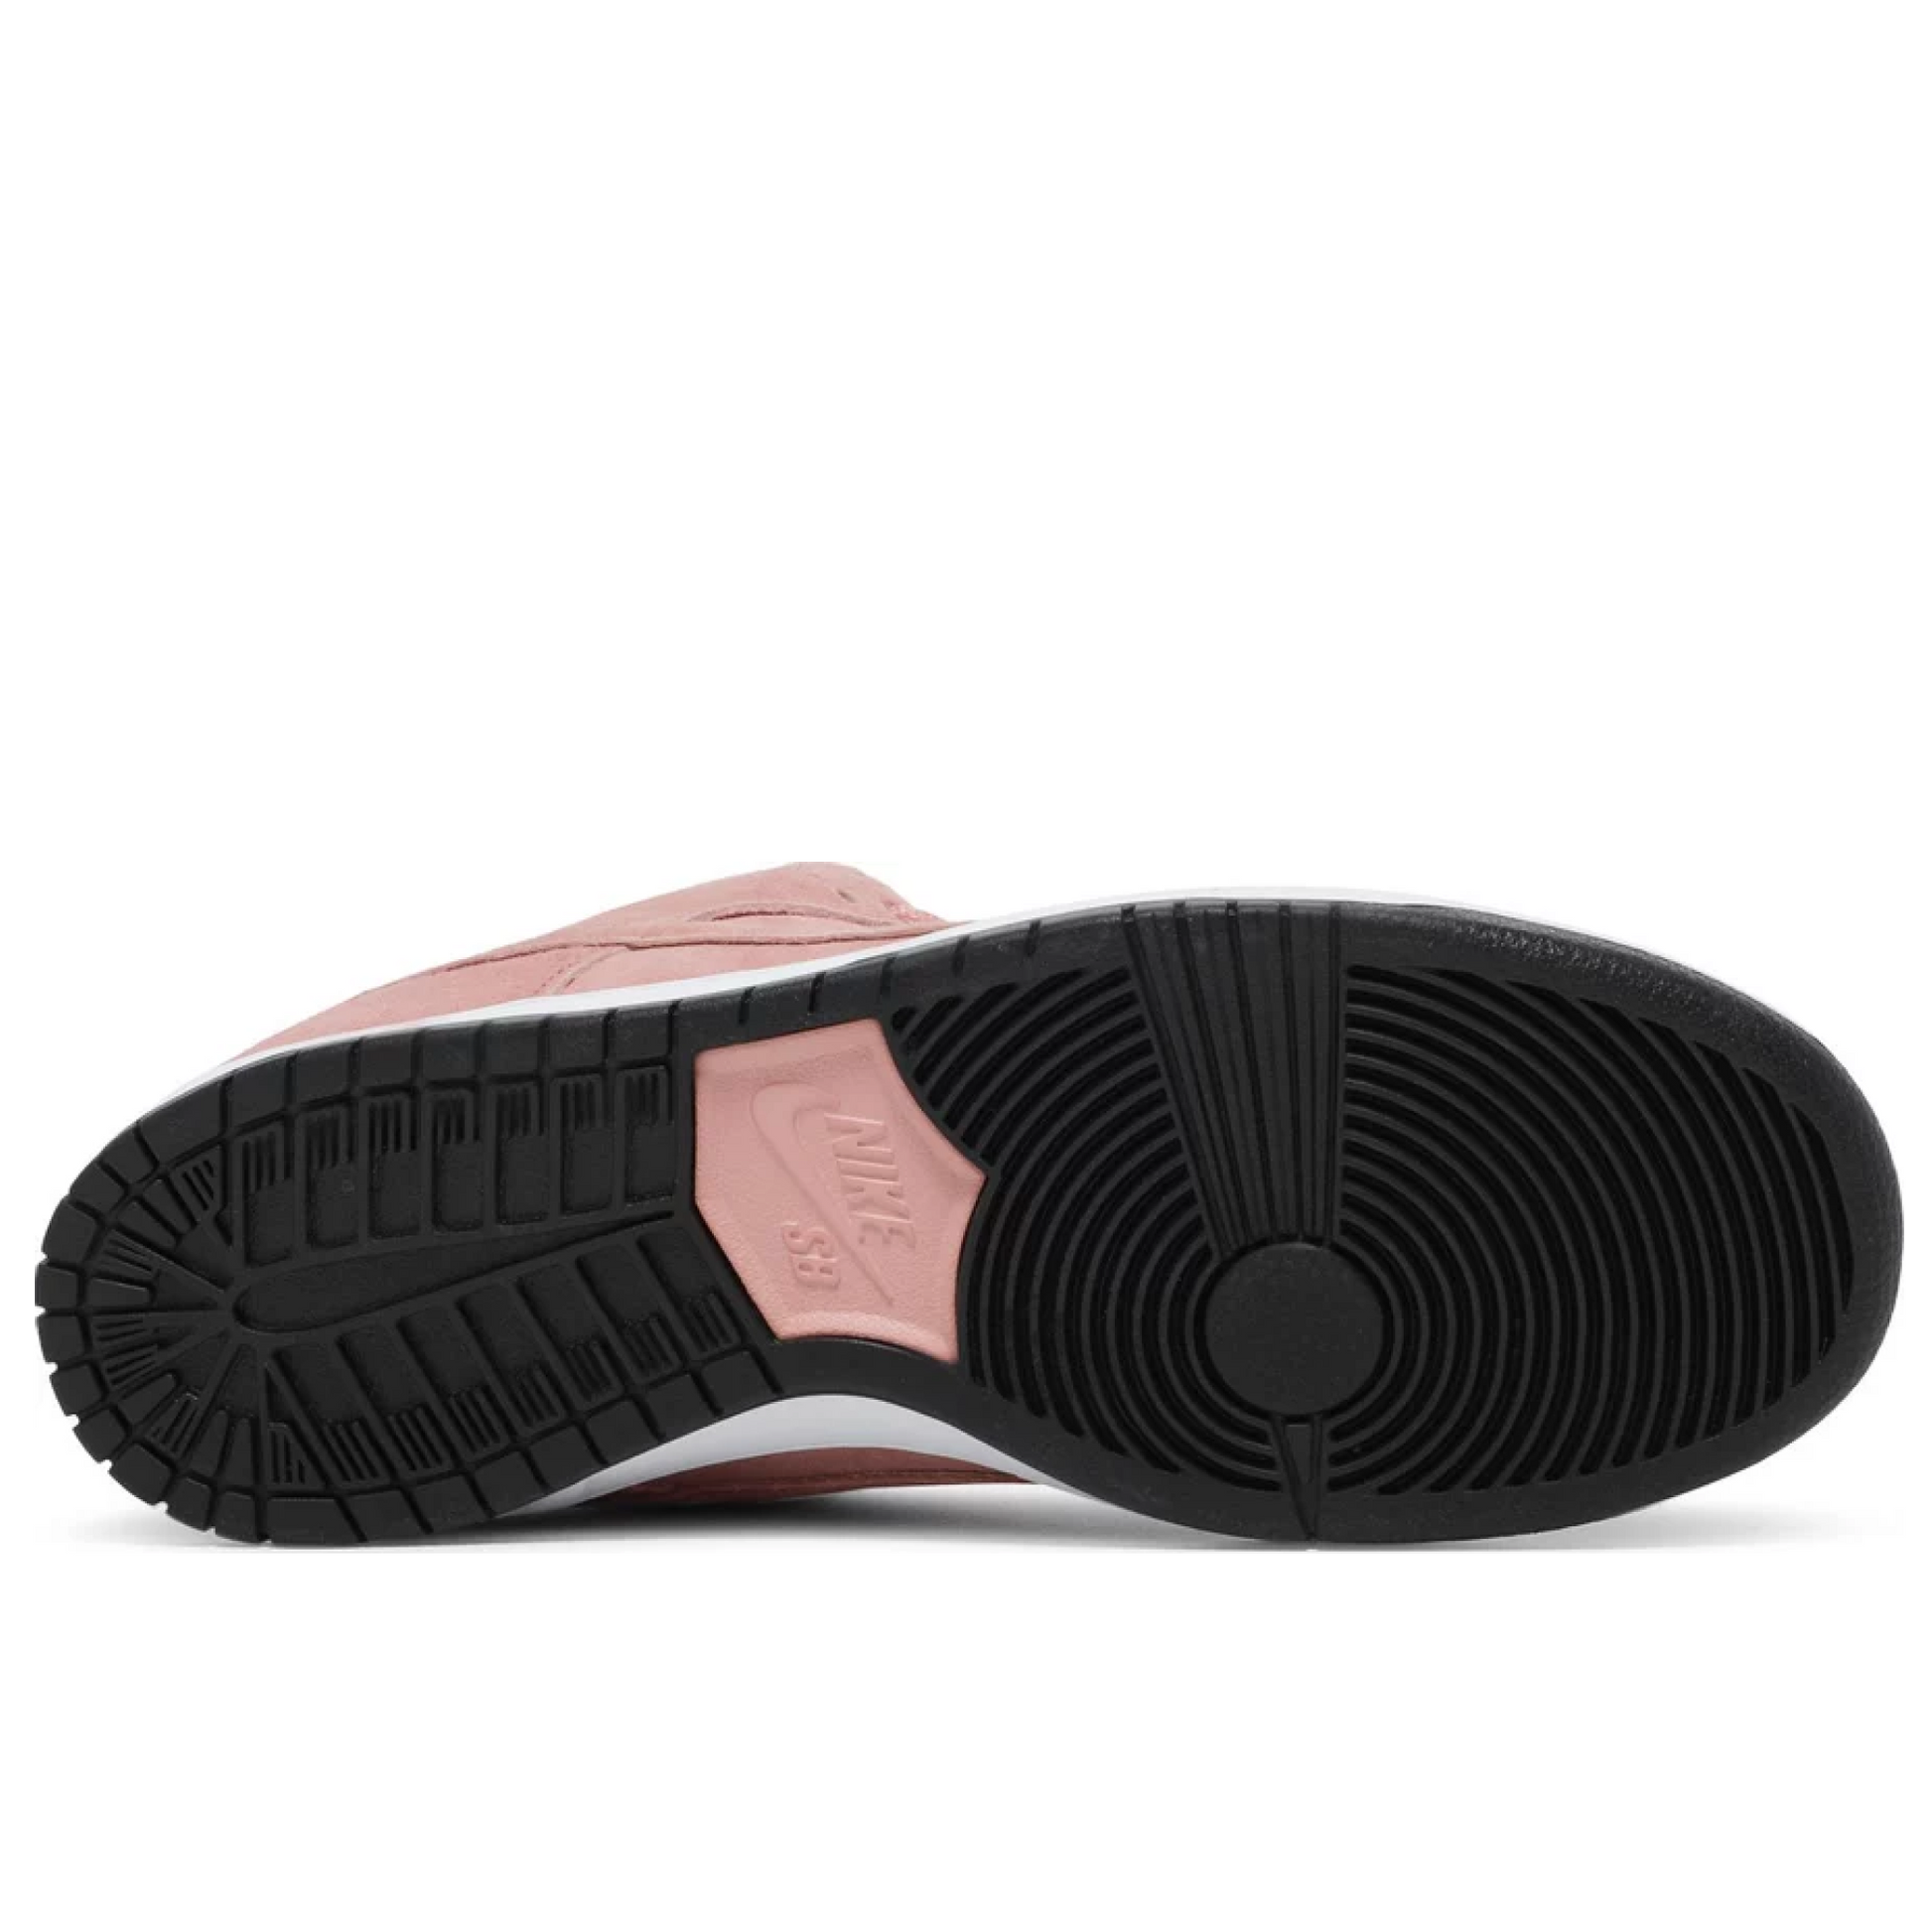 Nike SB Dunk Low Pink Pig Nike